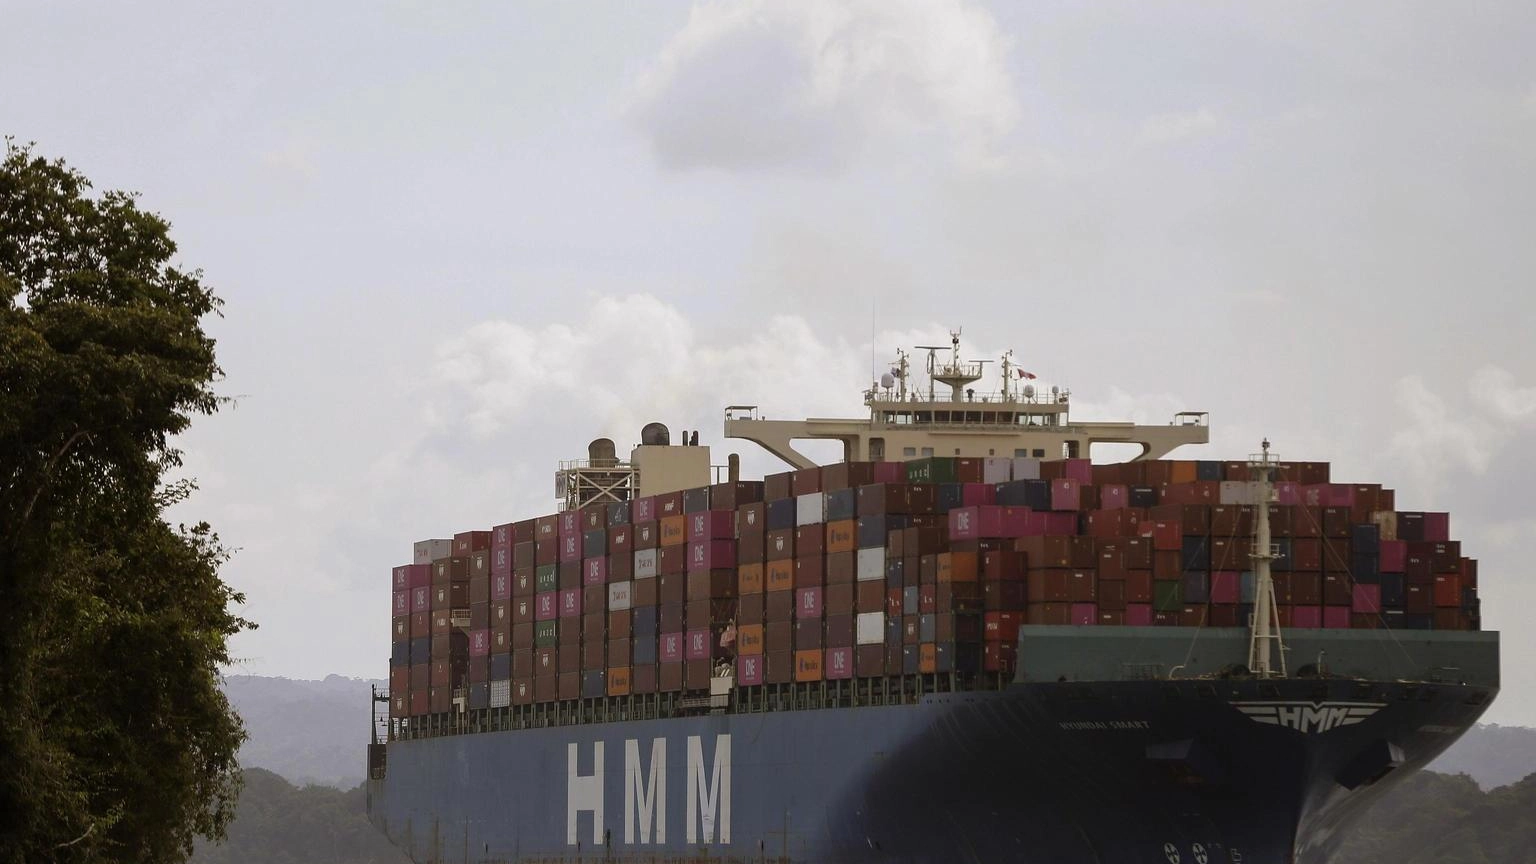 Canale di Panama in secca, ancora crisi per il commercio globale